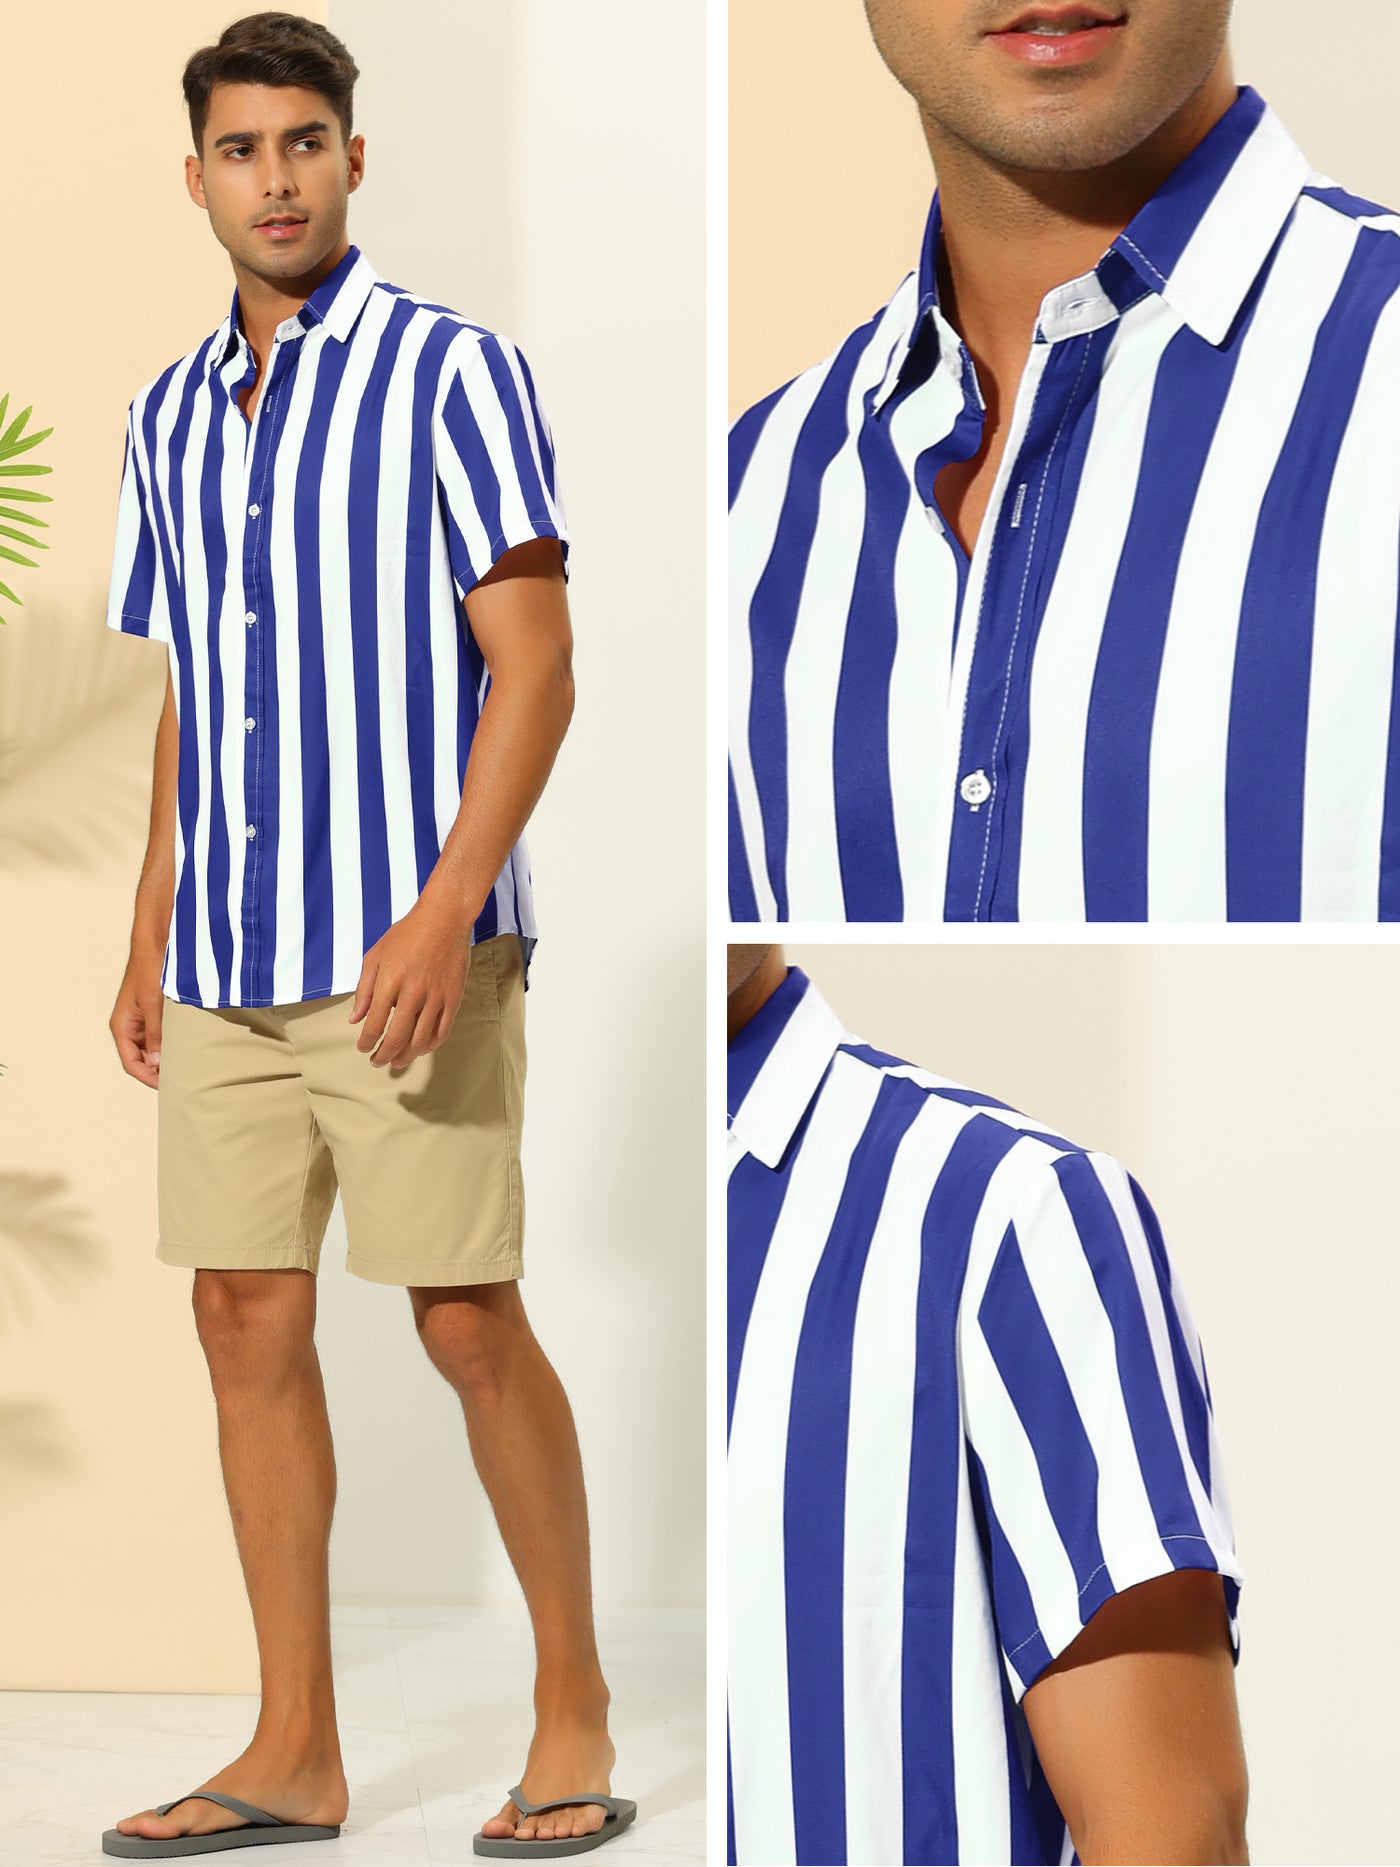 Bublédon Striped Shirts for Men's Summer Regular Fit Short Sleeves Button Down Hawaiian Shirt